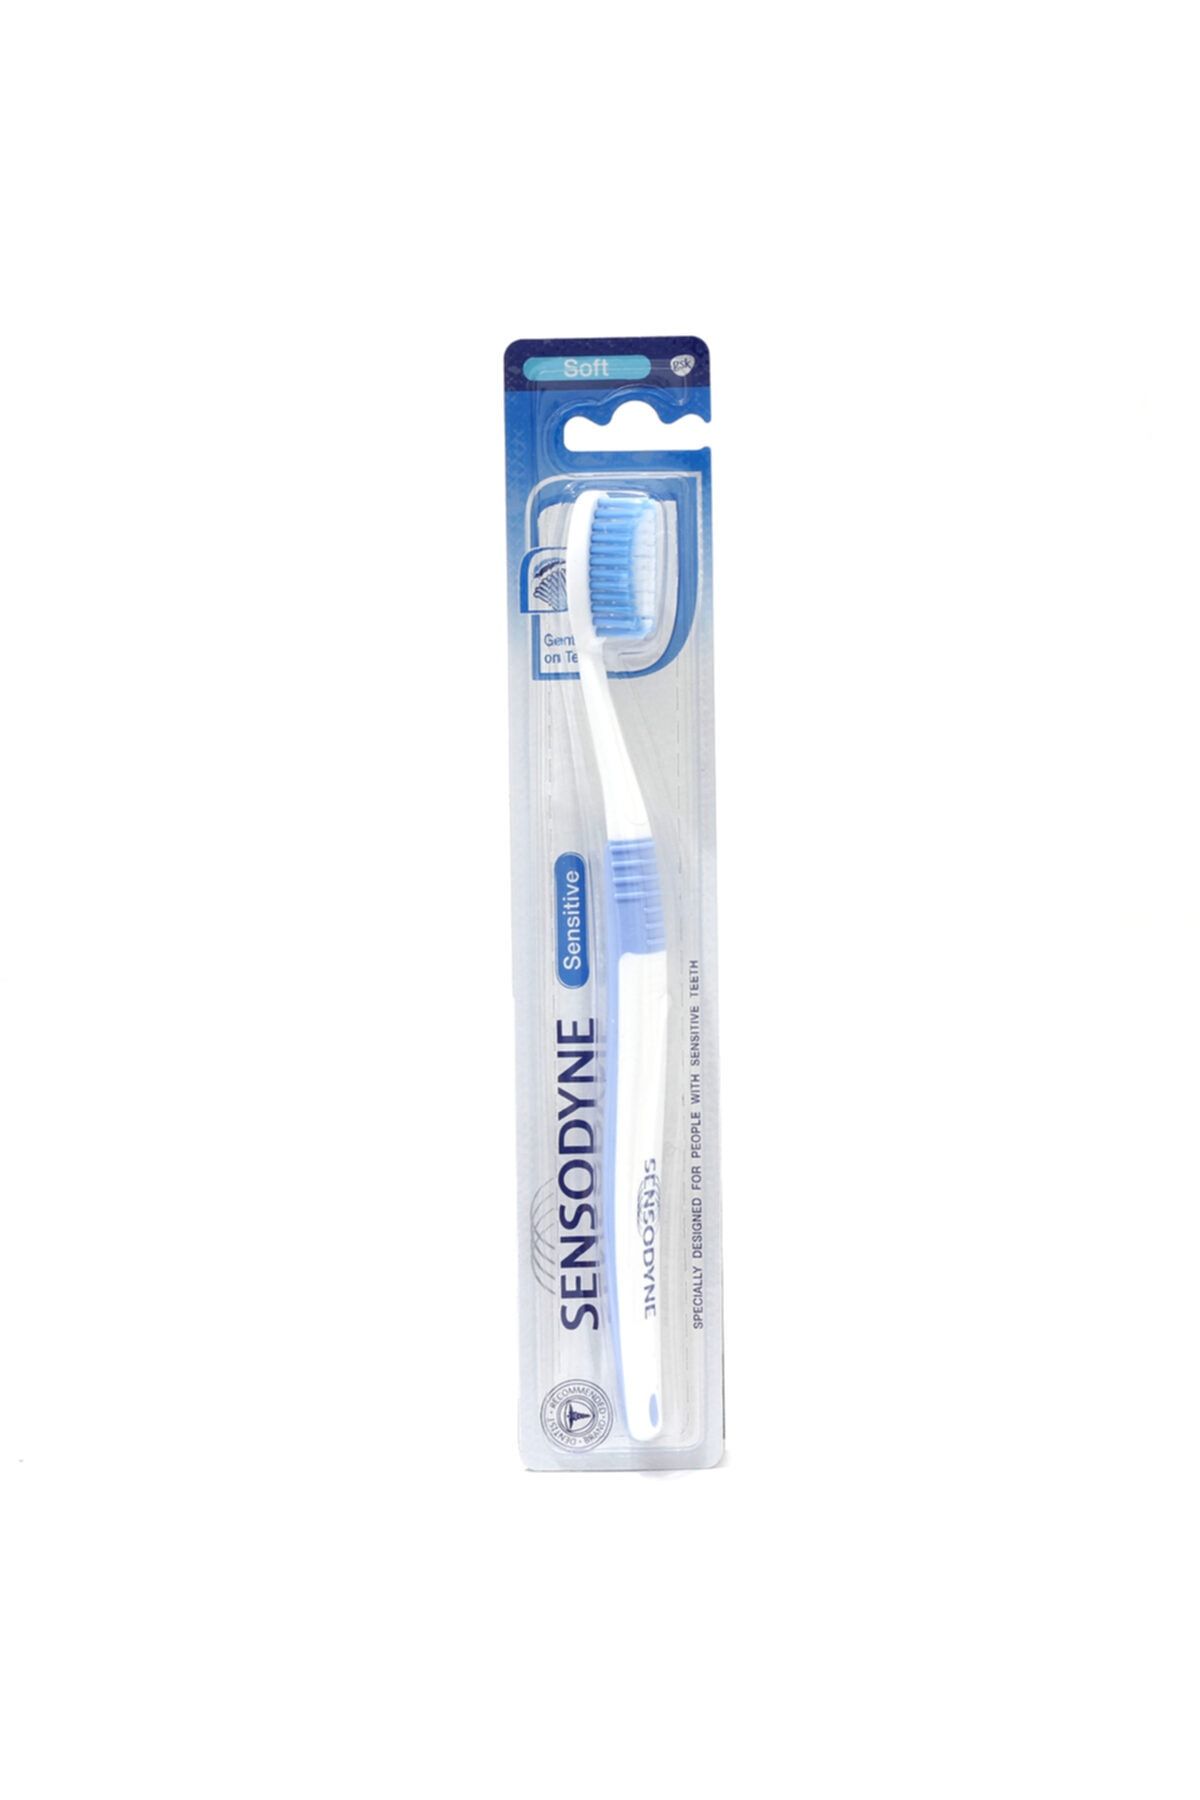 Sensodyne Diş Fırçası Sensitive Soft